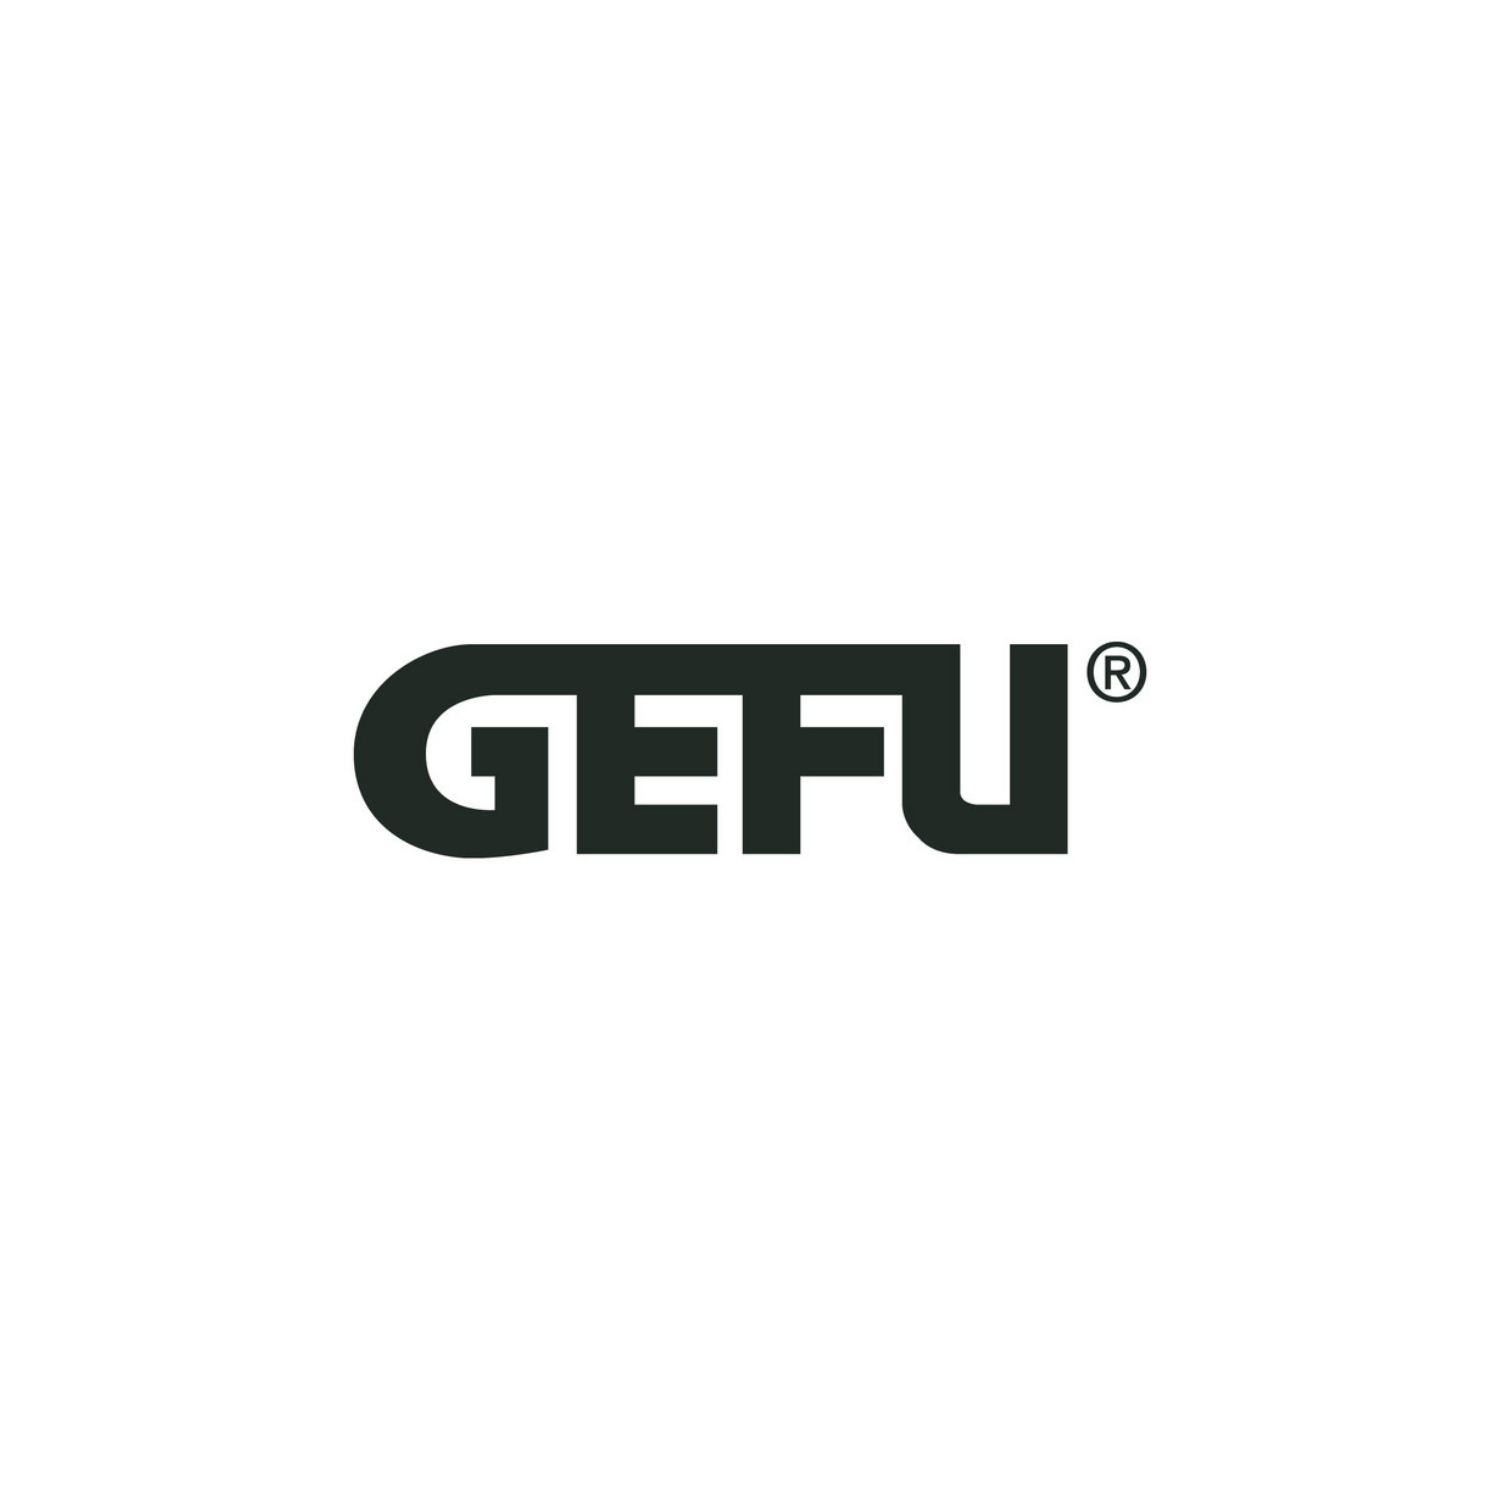 gefu-logo